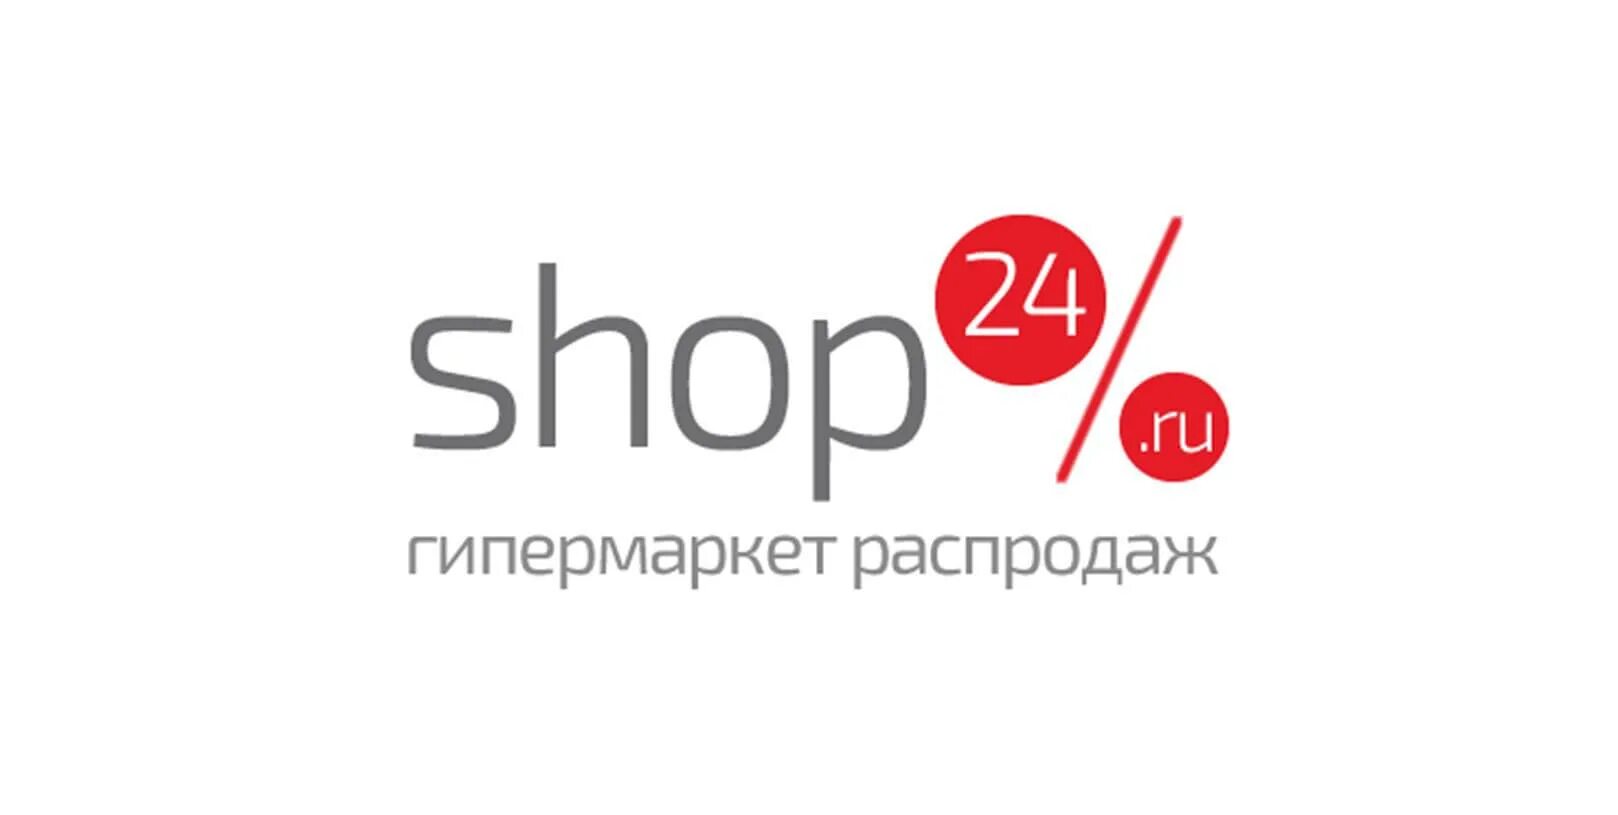 Shop shop интернет магазин. Shop24 ru магазин интернет. Сайт интернет магазина 24. Shop 24 shop ru интернет магазин. Эфиры шоп 24